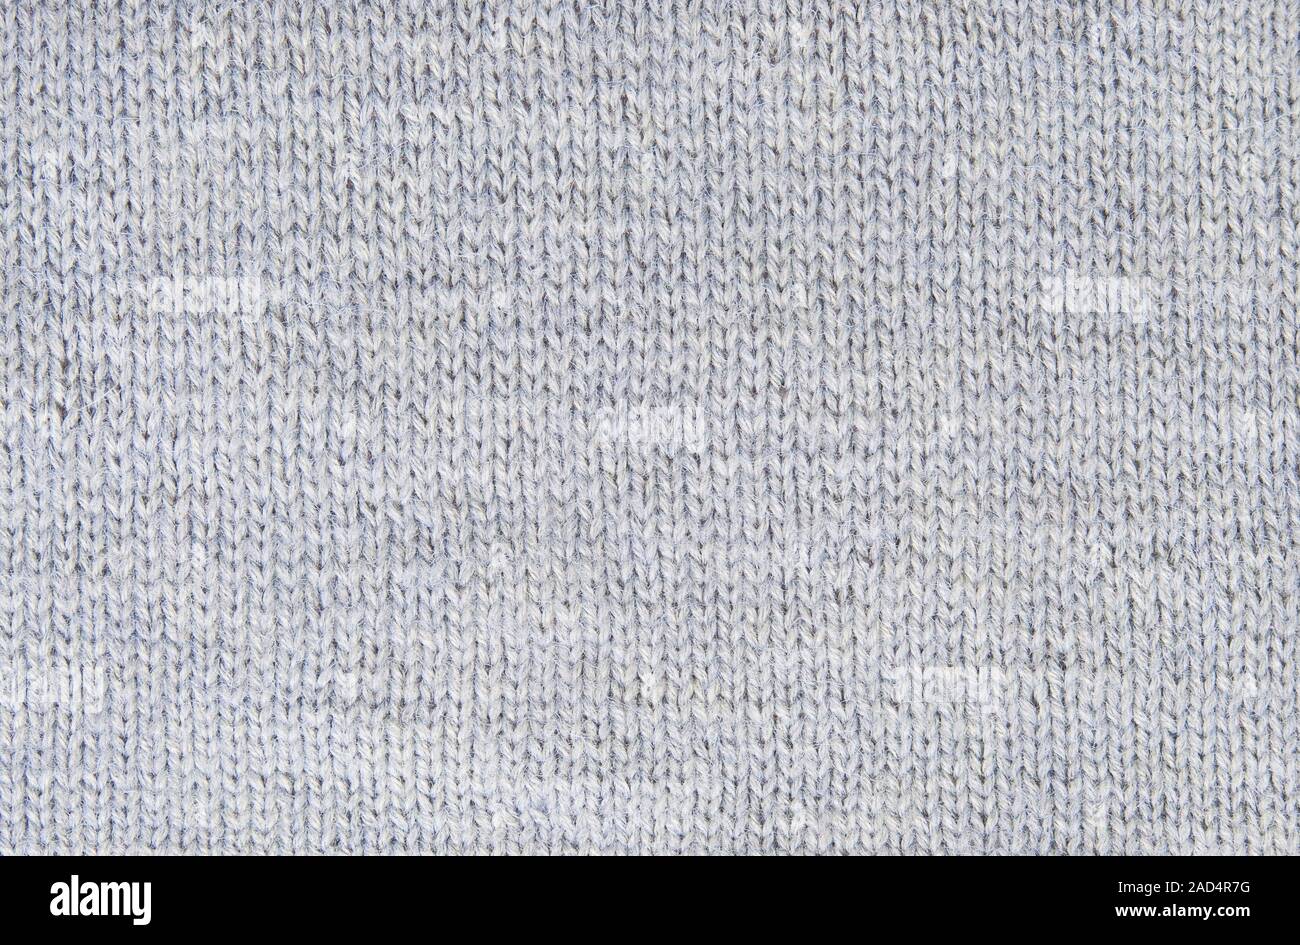 Antecedentes patrón pequeño de hilo de tejer lana gris Foto de stock